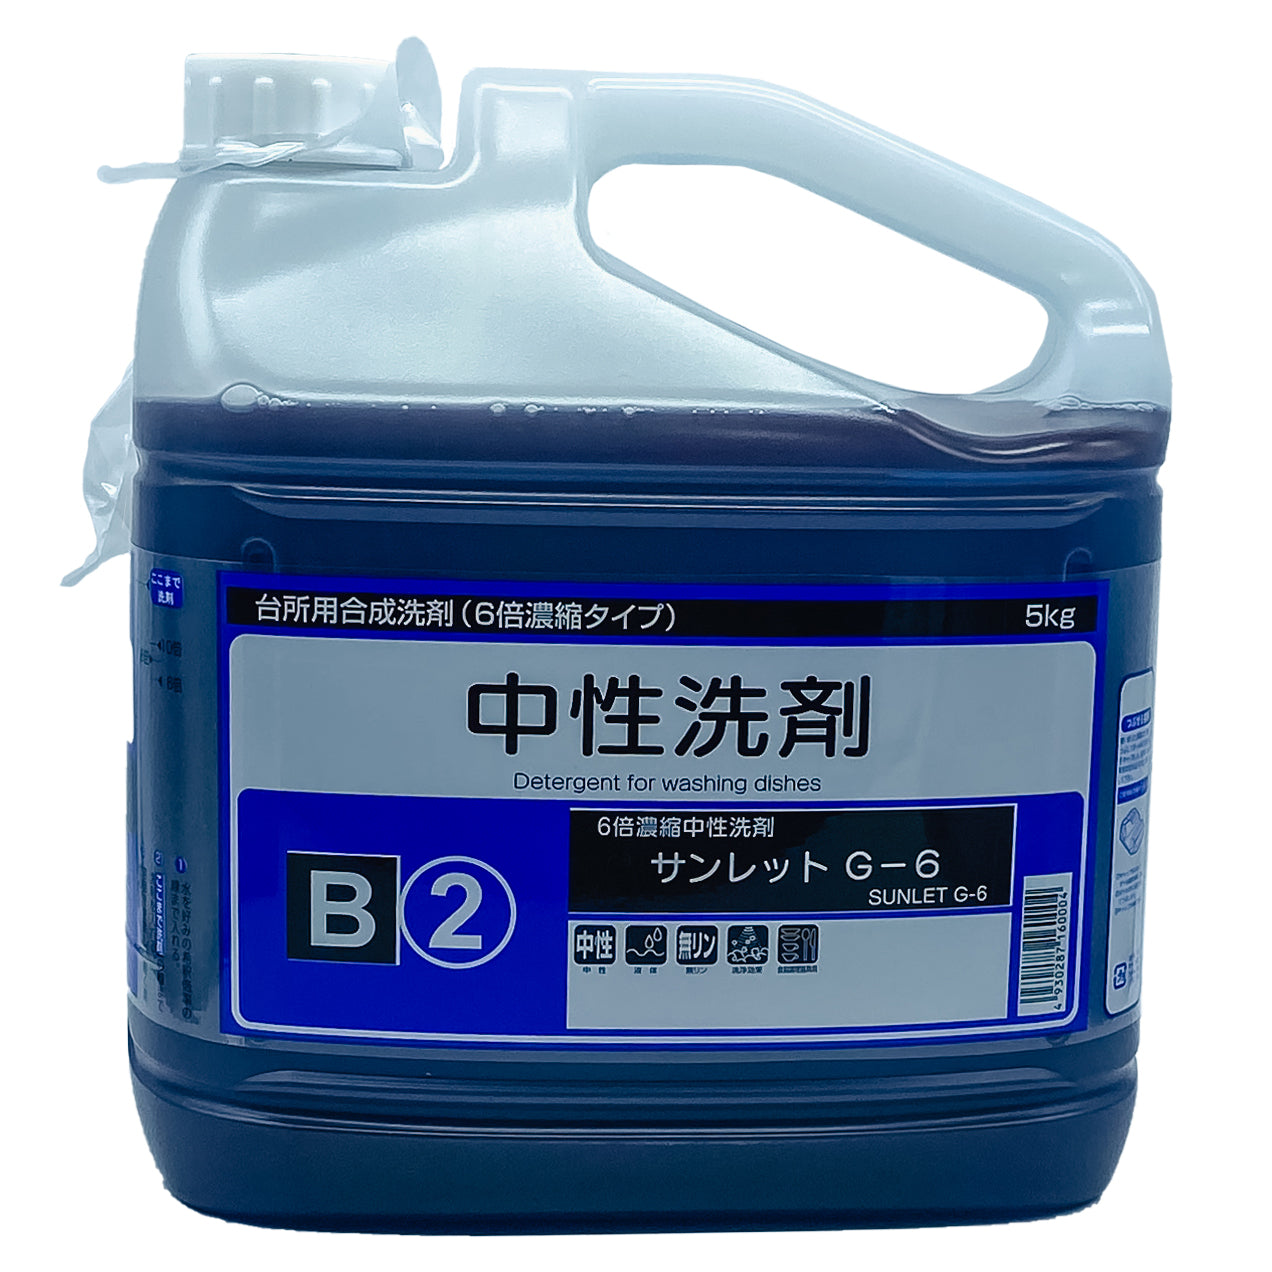 【高濃度中性洗剤】静光産業 サンレット G-6 5kg